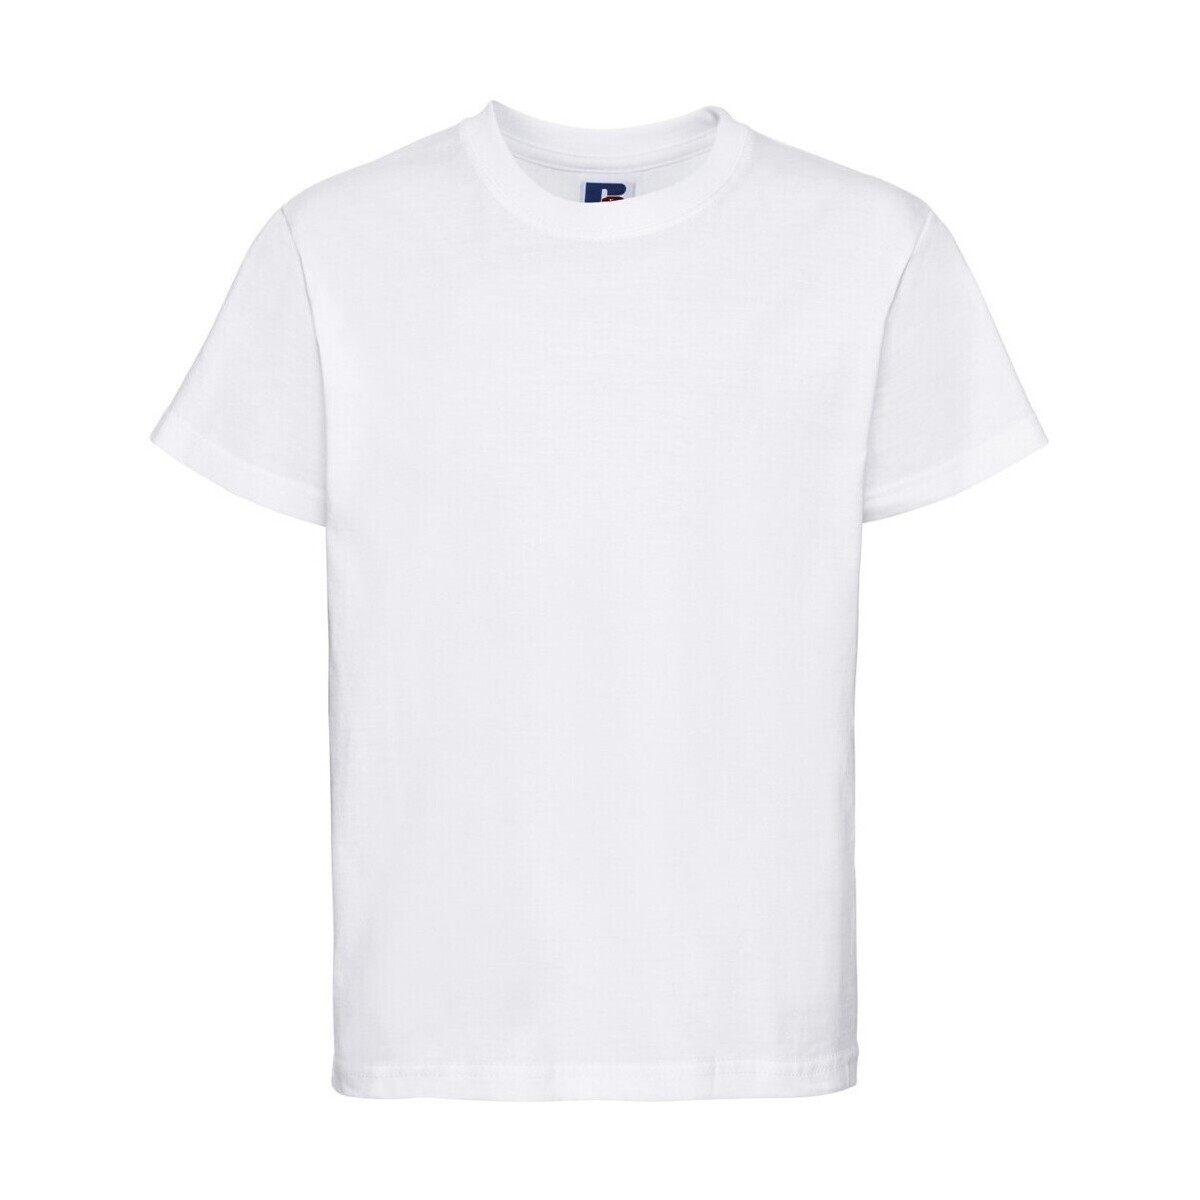 Vêtements Enfant T-shirts manches courtes Jerzees Schoolgear 180B Blanc